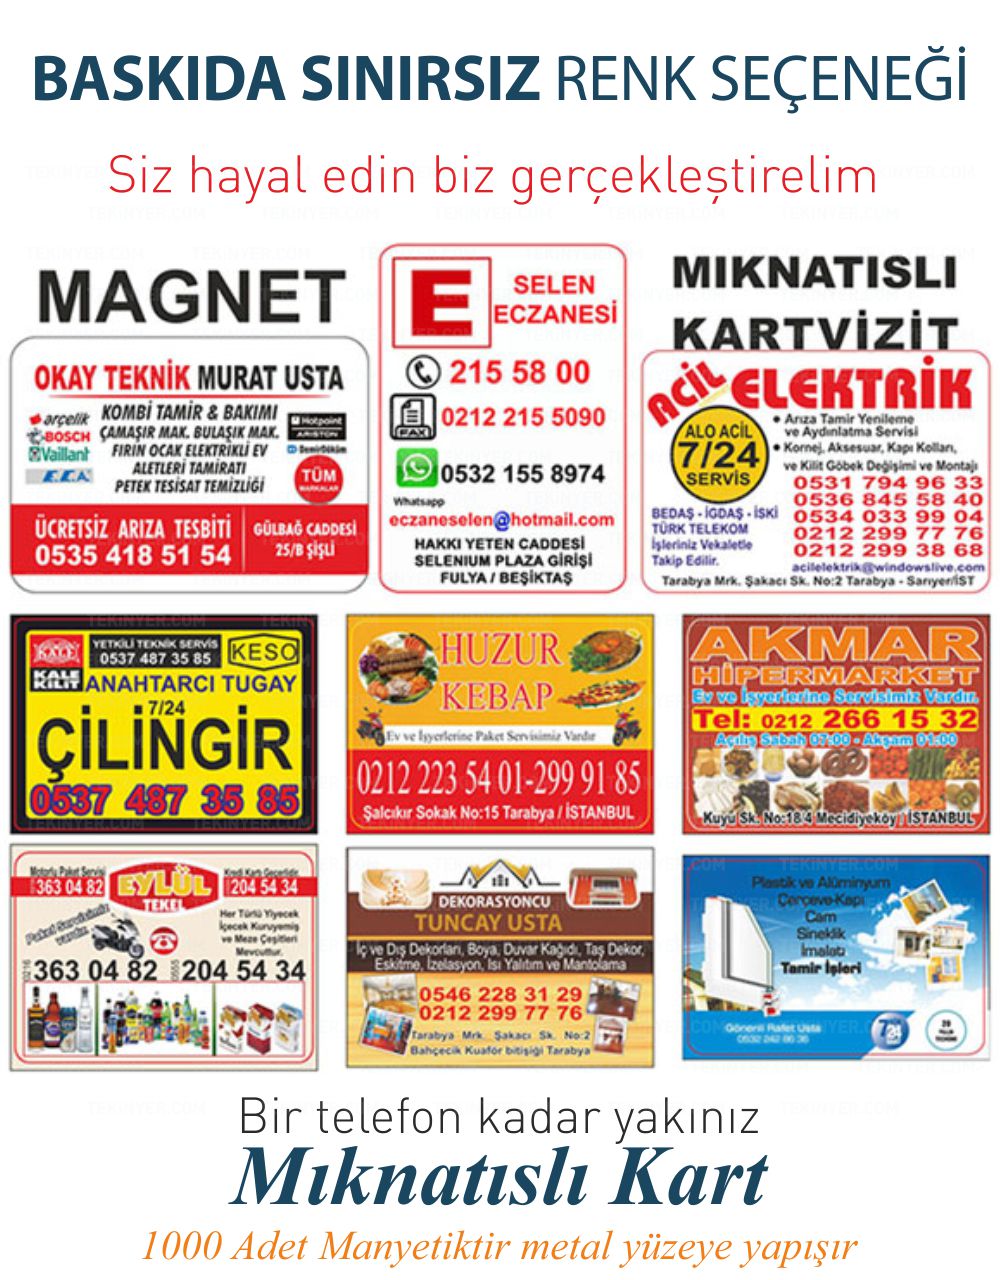 Ankara Magnet Sınırsız Renk Baskı Seçeneği